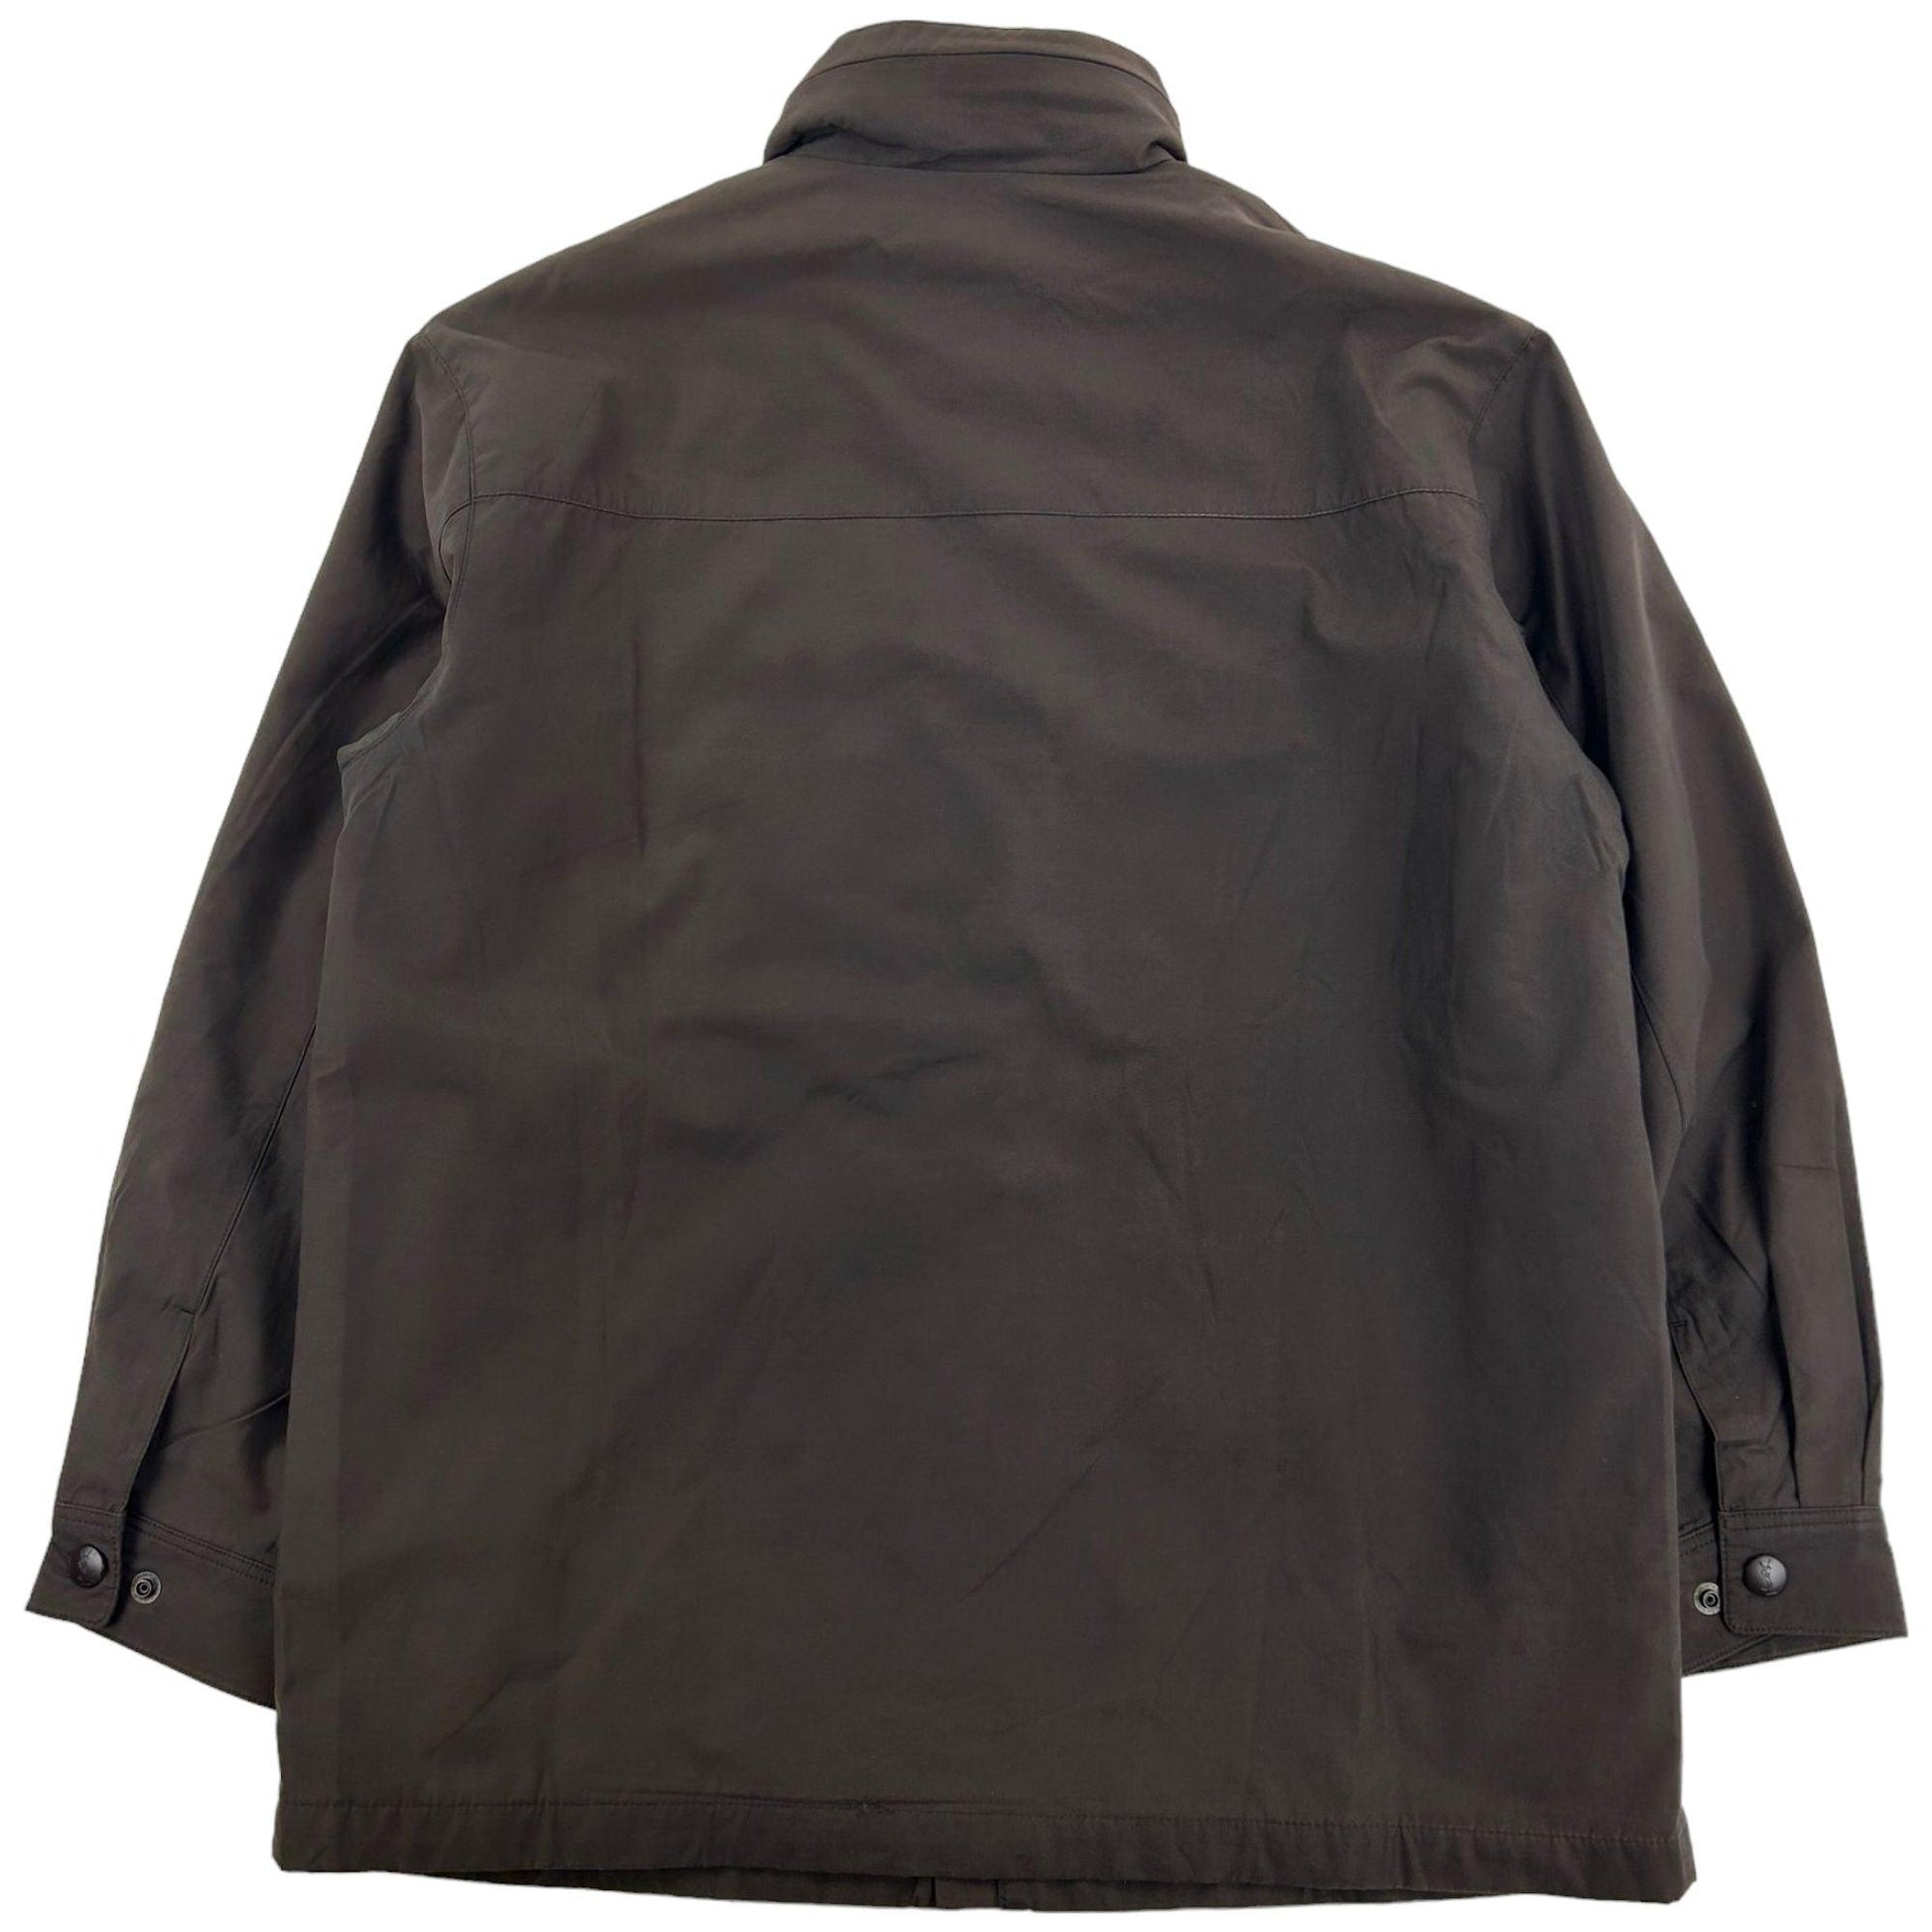 Vintage Yves Saint Laurent Jacket Size L - Known Source